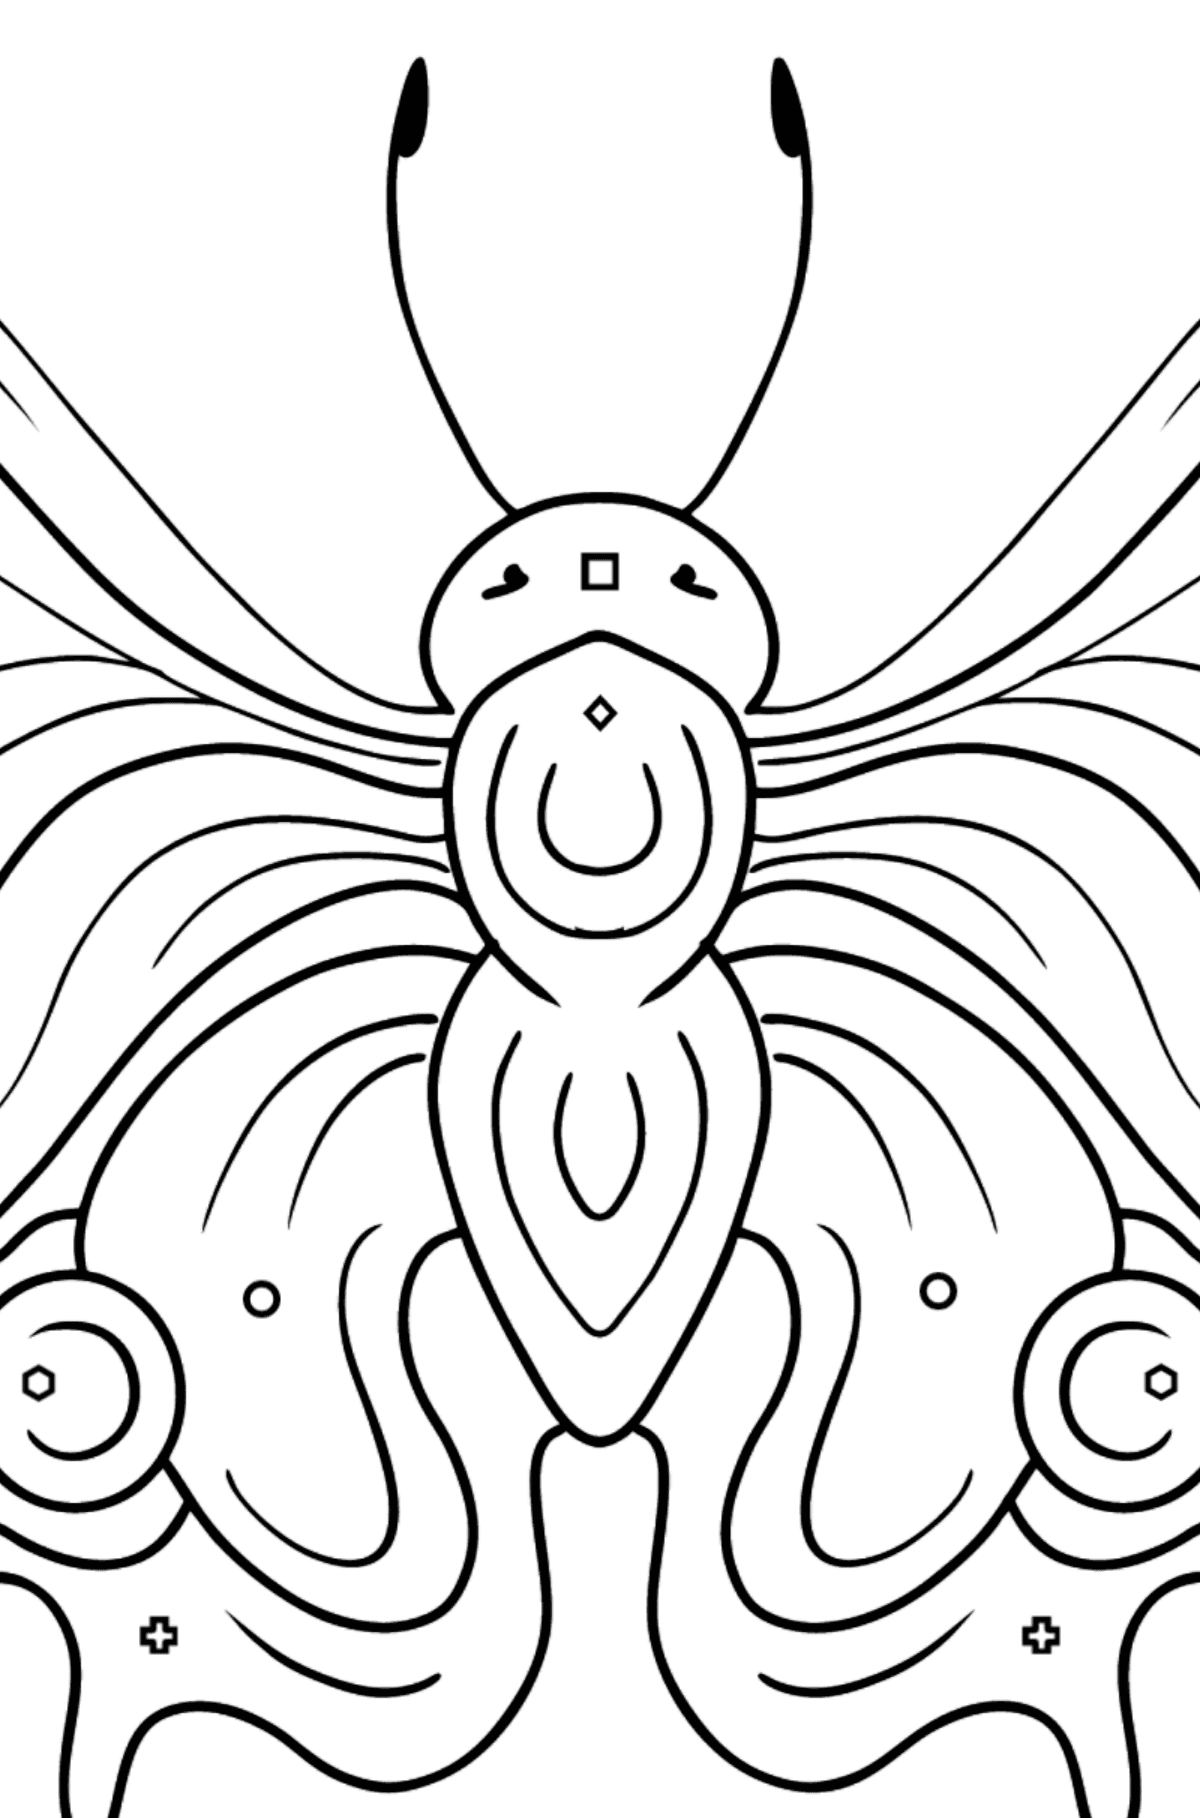 Dibujo de Mariposa pavo real para colorear - Colorear por Formas Geométricas para Niños